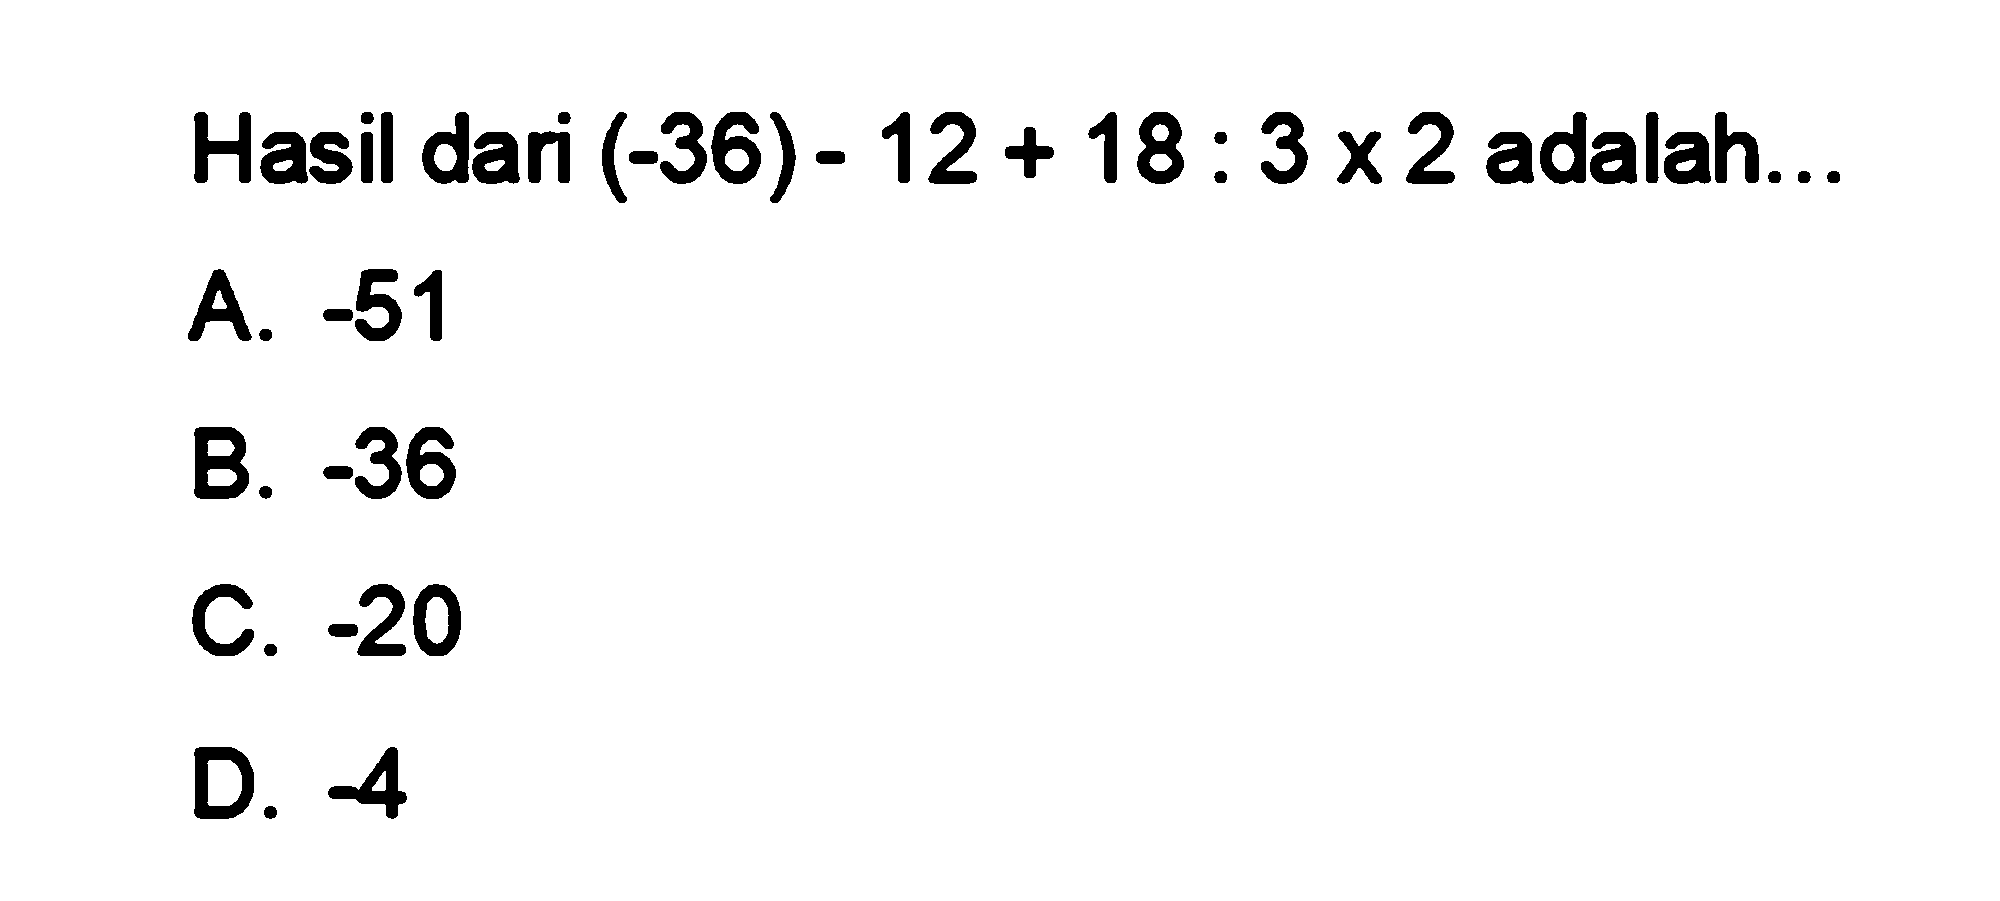 Hasil dari (-36) - 12 + 18 : 3 x 2 adalah: